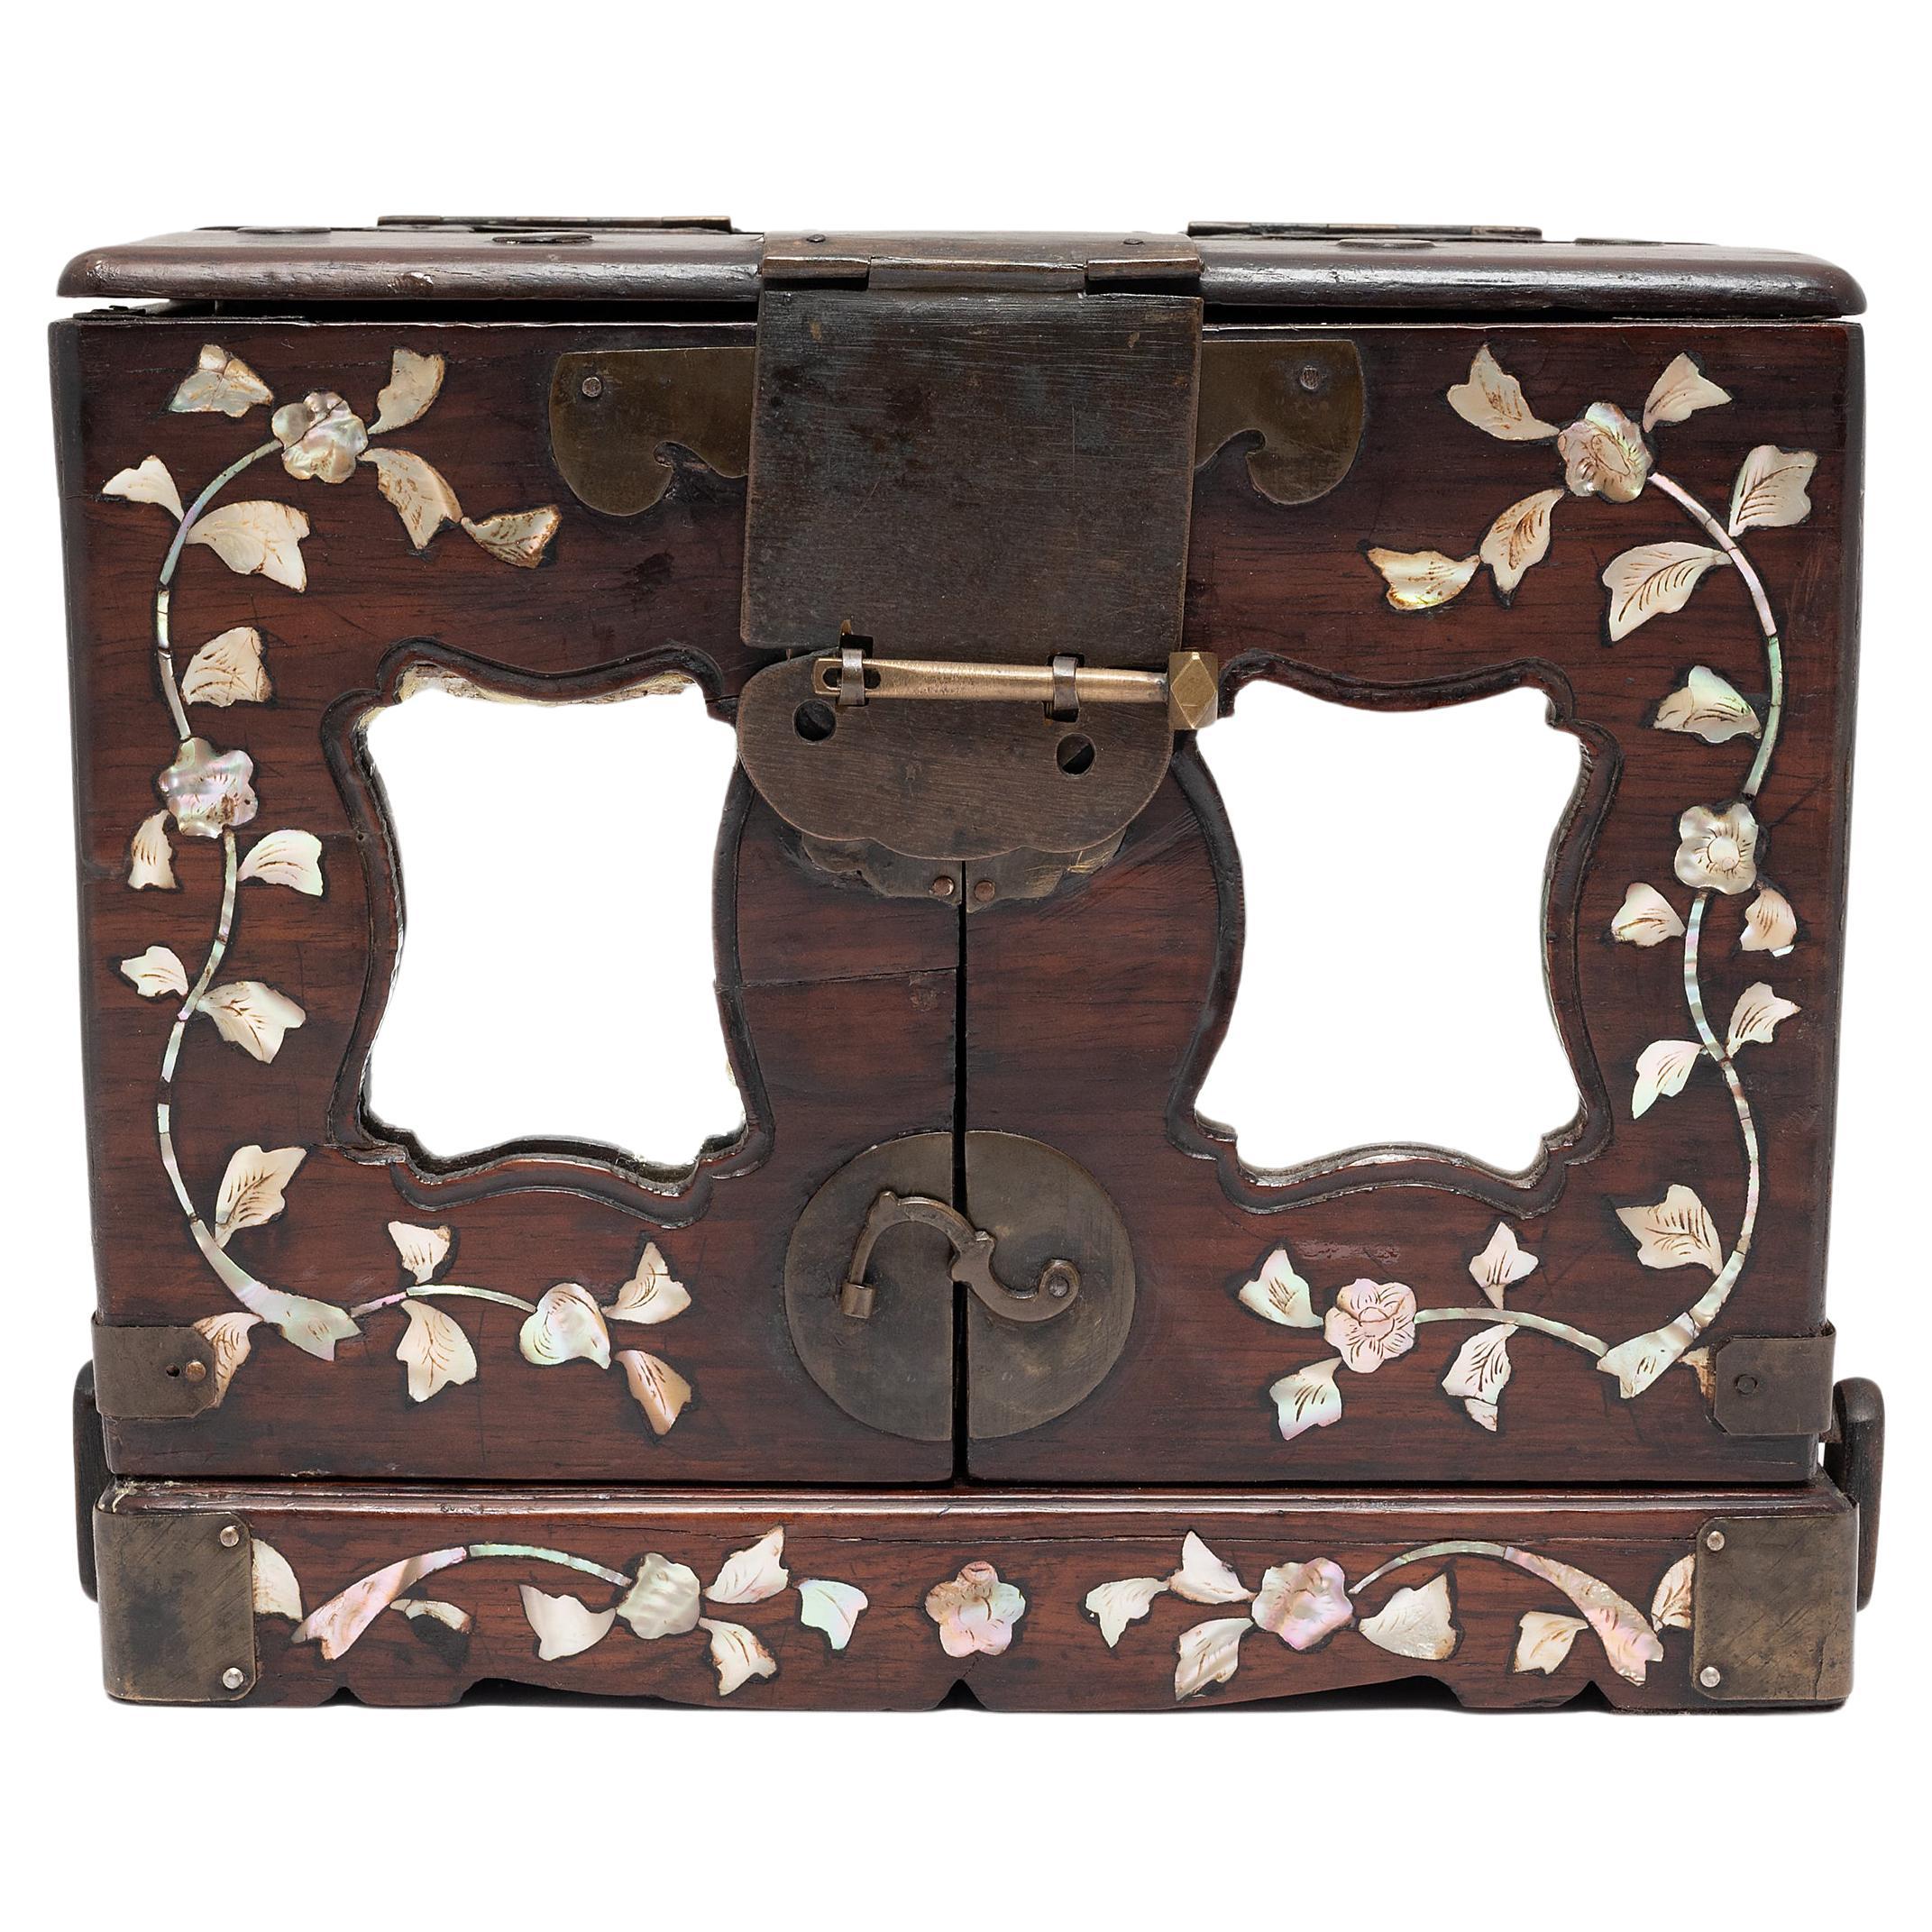 Boîte à bijoux chinoise en bois de feuillus avec incrustation de nacre, vers 1850